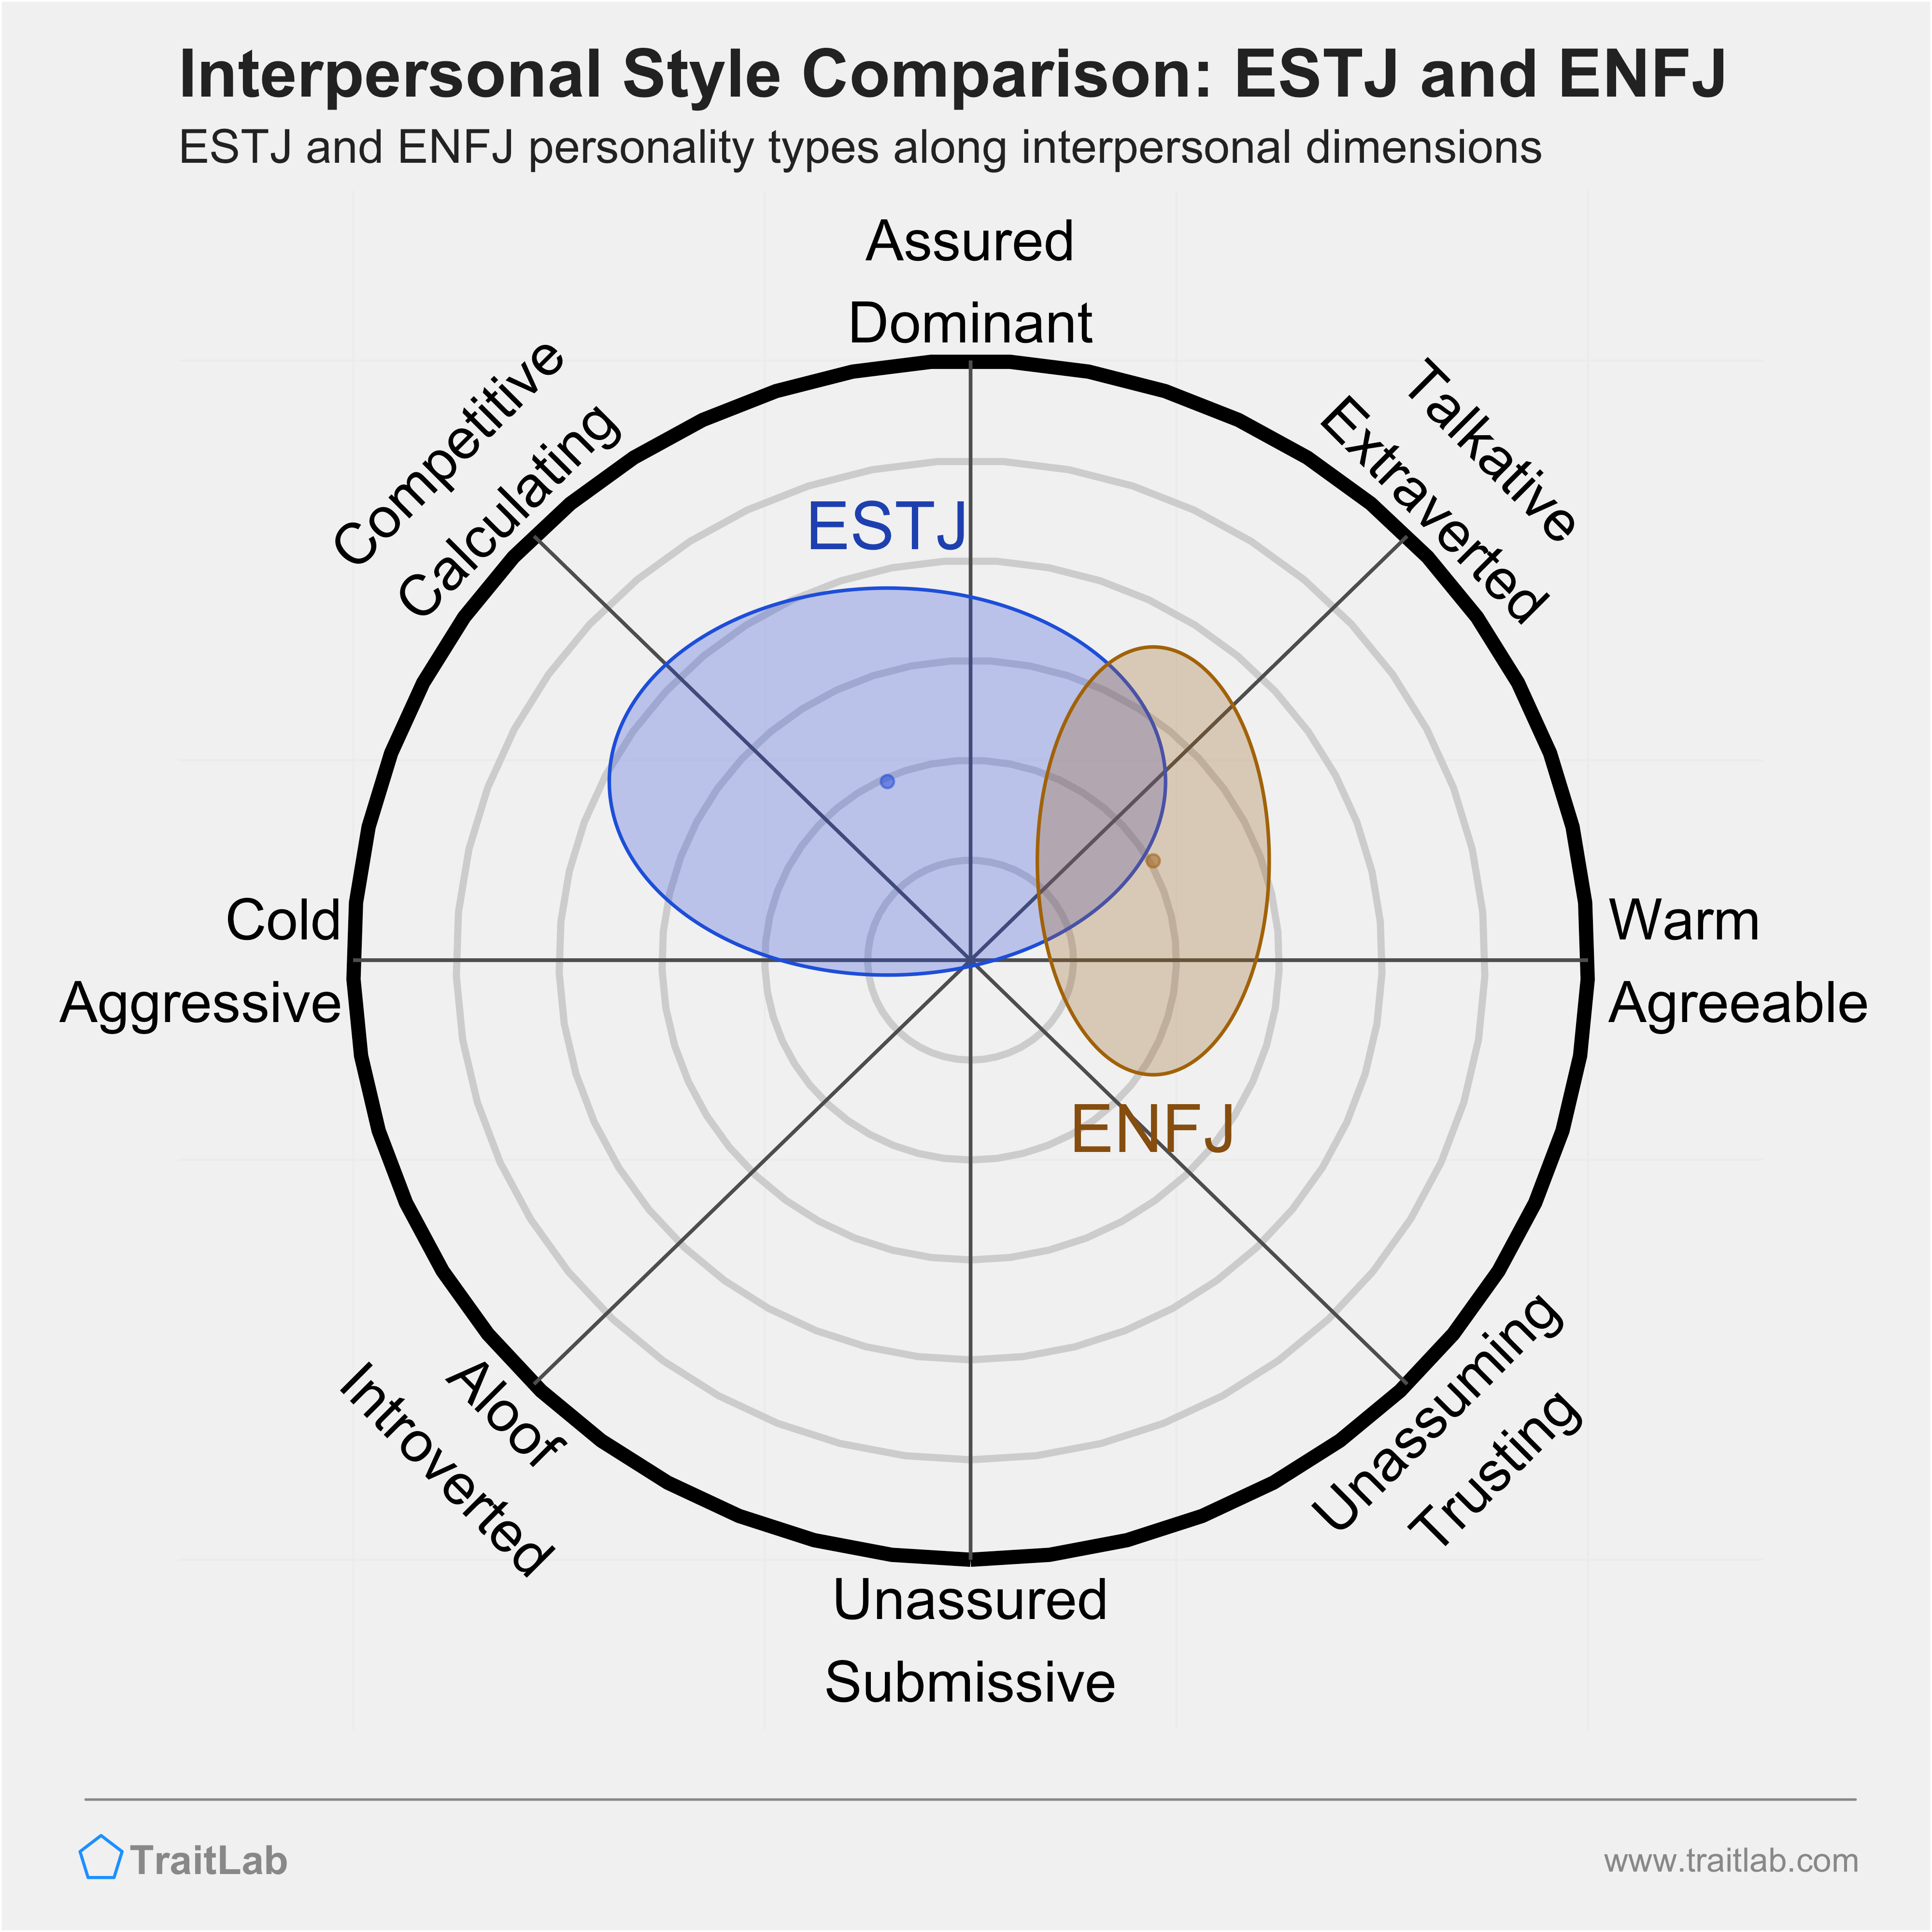 ESTJ and ENFJ comparison across interpersonal dimensions